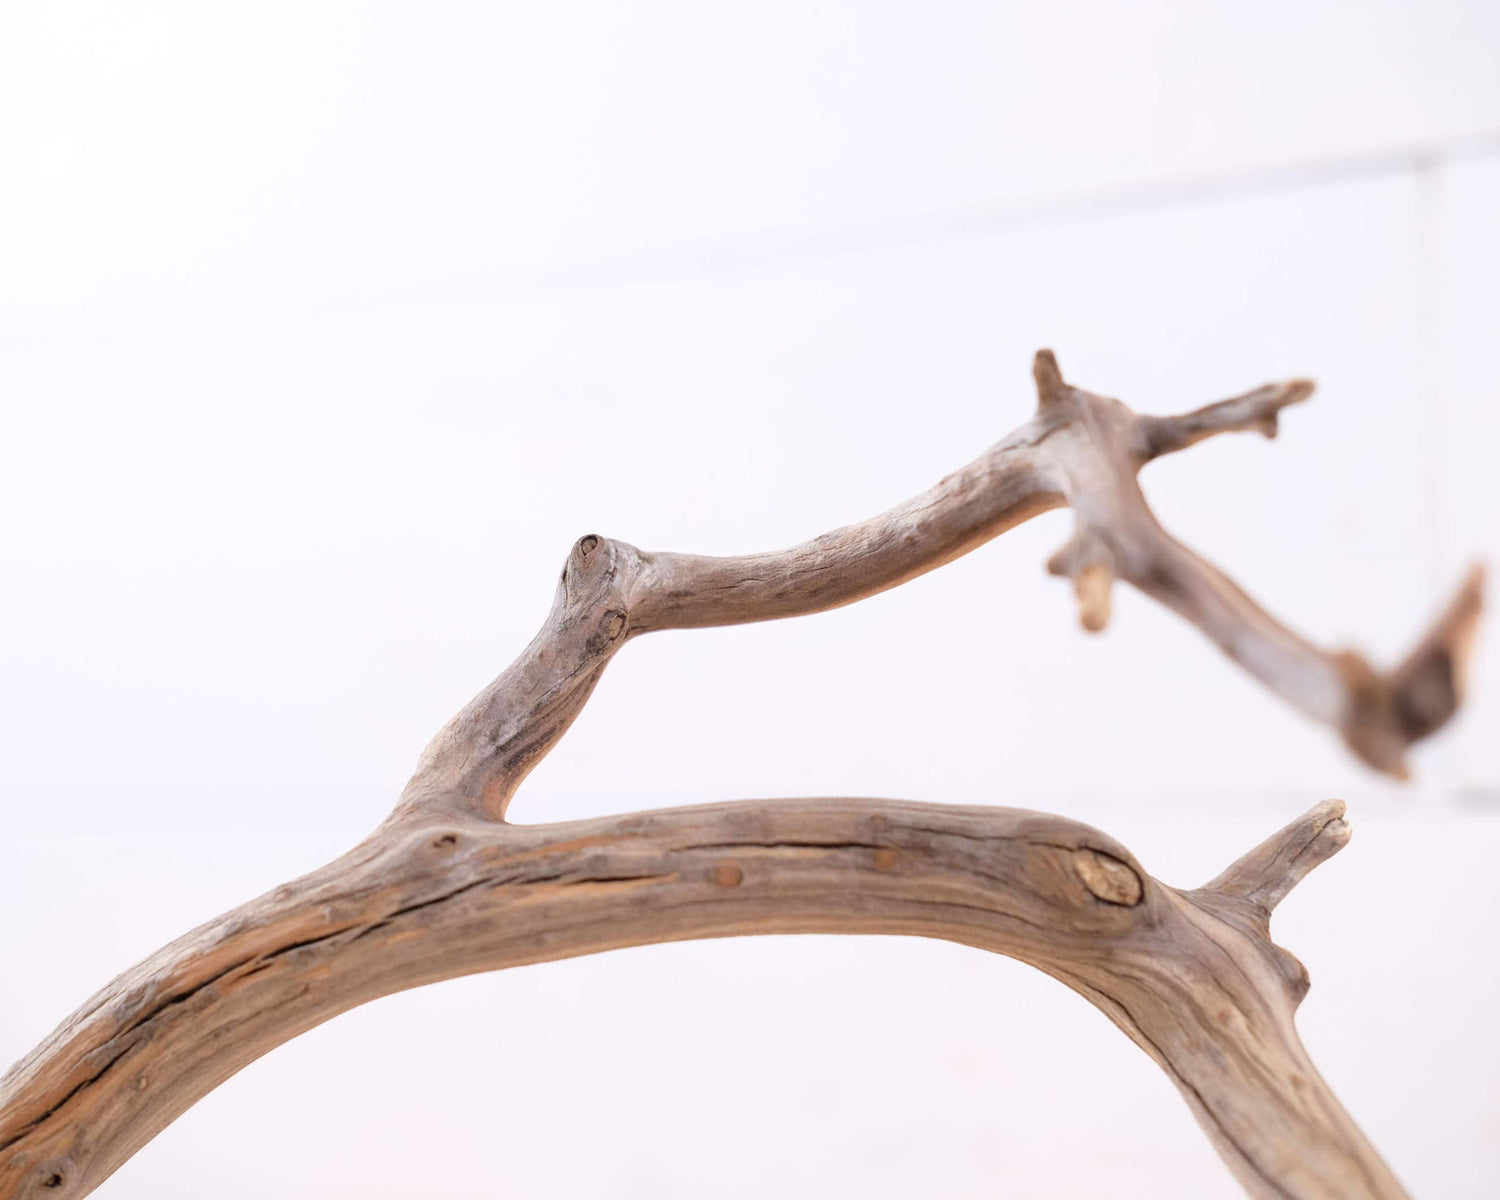 Manzanita 18" Branch, Slender Aquascape Driftwood, Natural Terrarium Wood, Aquarium Decor